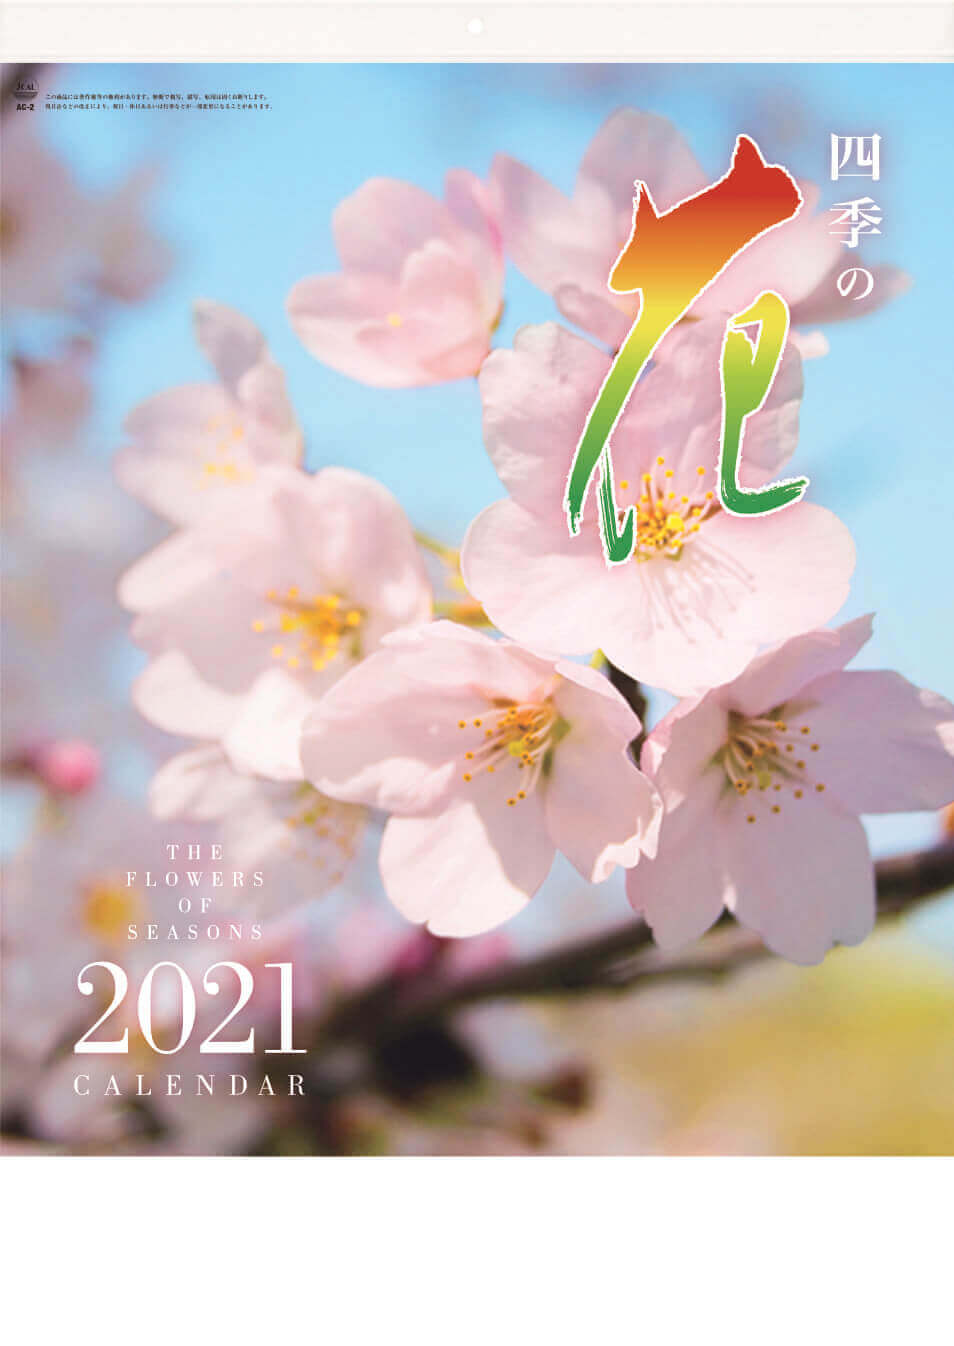 Ac 2 四季の花 21年カレンダー 桜 椿などの花の写真カレンダー カレンダーの通販サイト E カレンダー Com 1部からでも送料無料でお届け